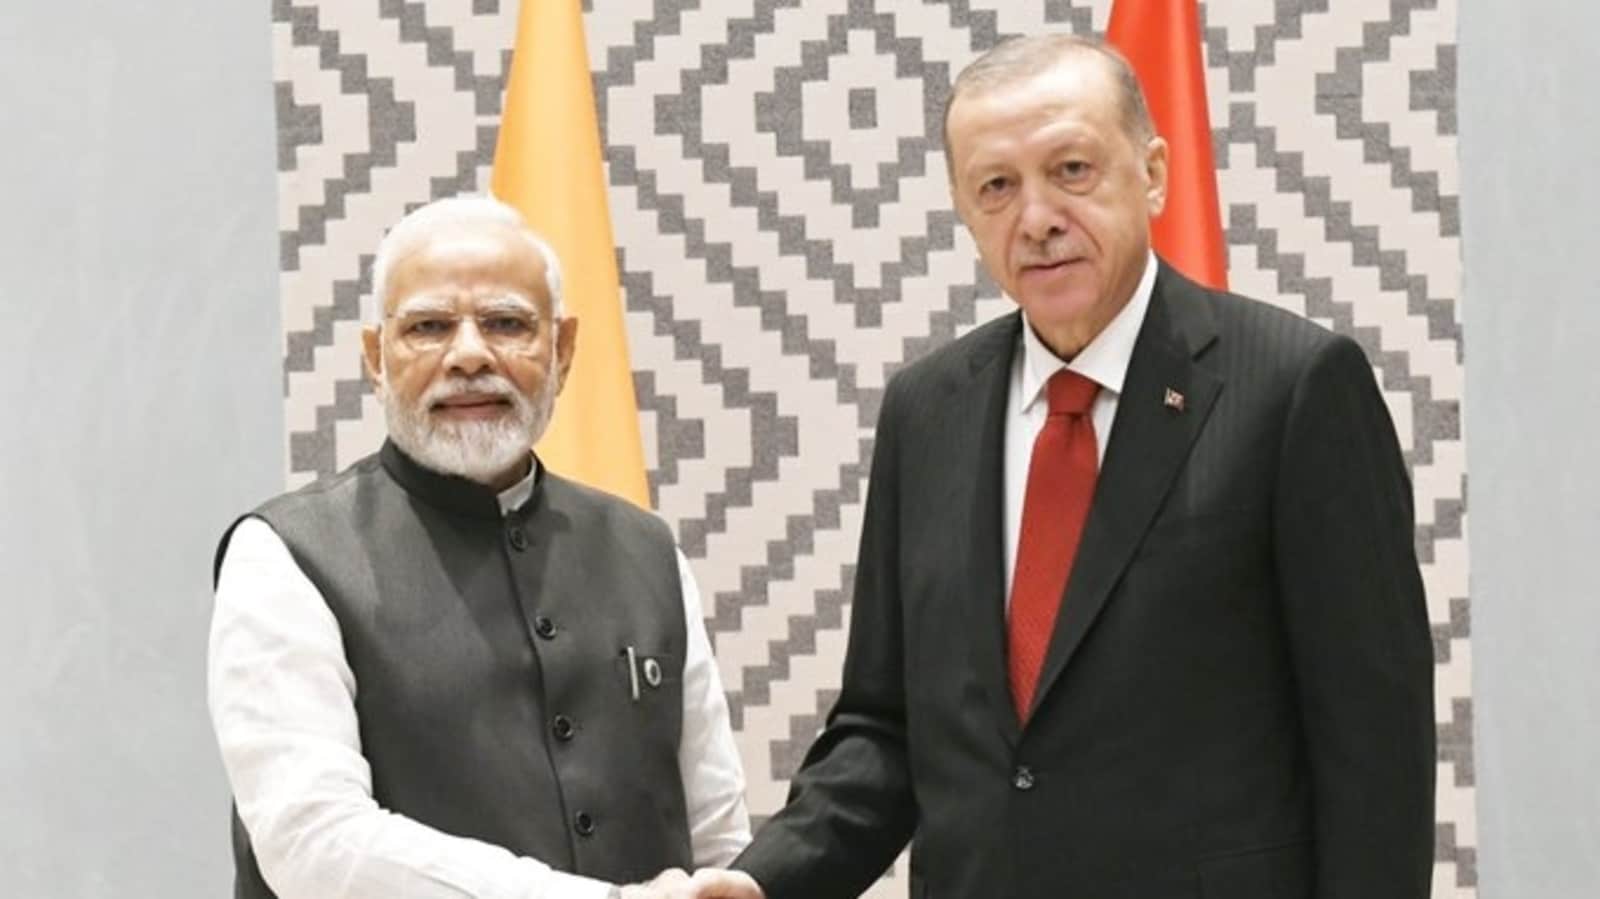 Modi meets Erdogan at SCO Summit, discusses bilateral cooperation